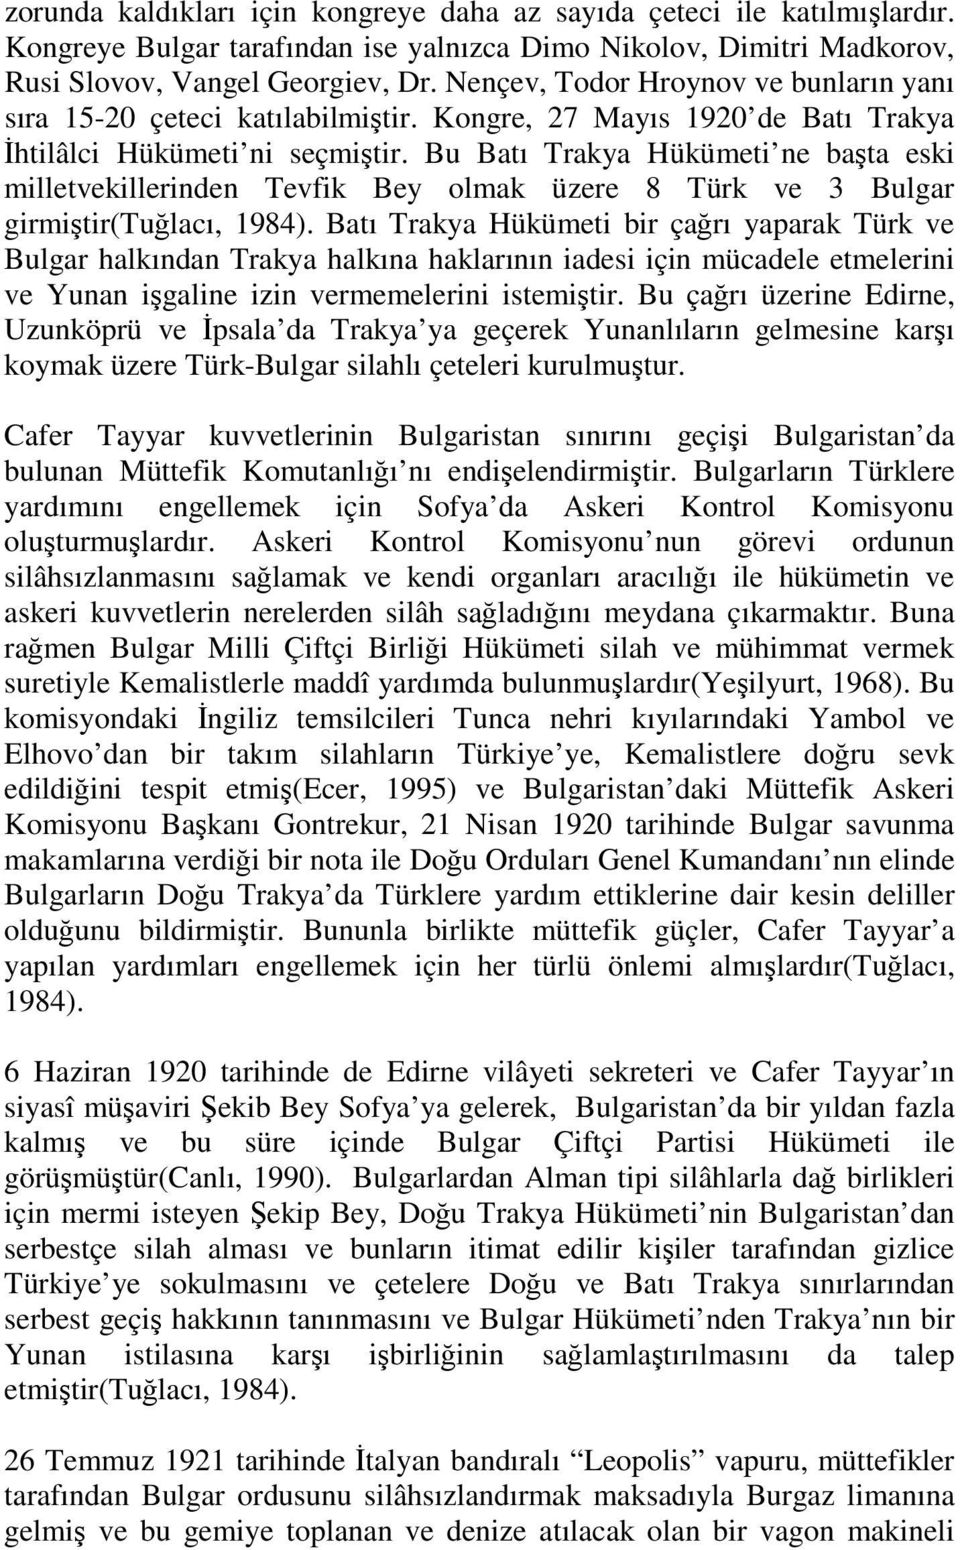 Bu Batı Trakya Hükümeti ne başta eski milletvekillerinden Tevfik Bey olmak üzere 8 Türk ve 3 Bulgar girmiştir(tuğlacı, 1984).